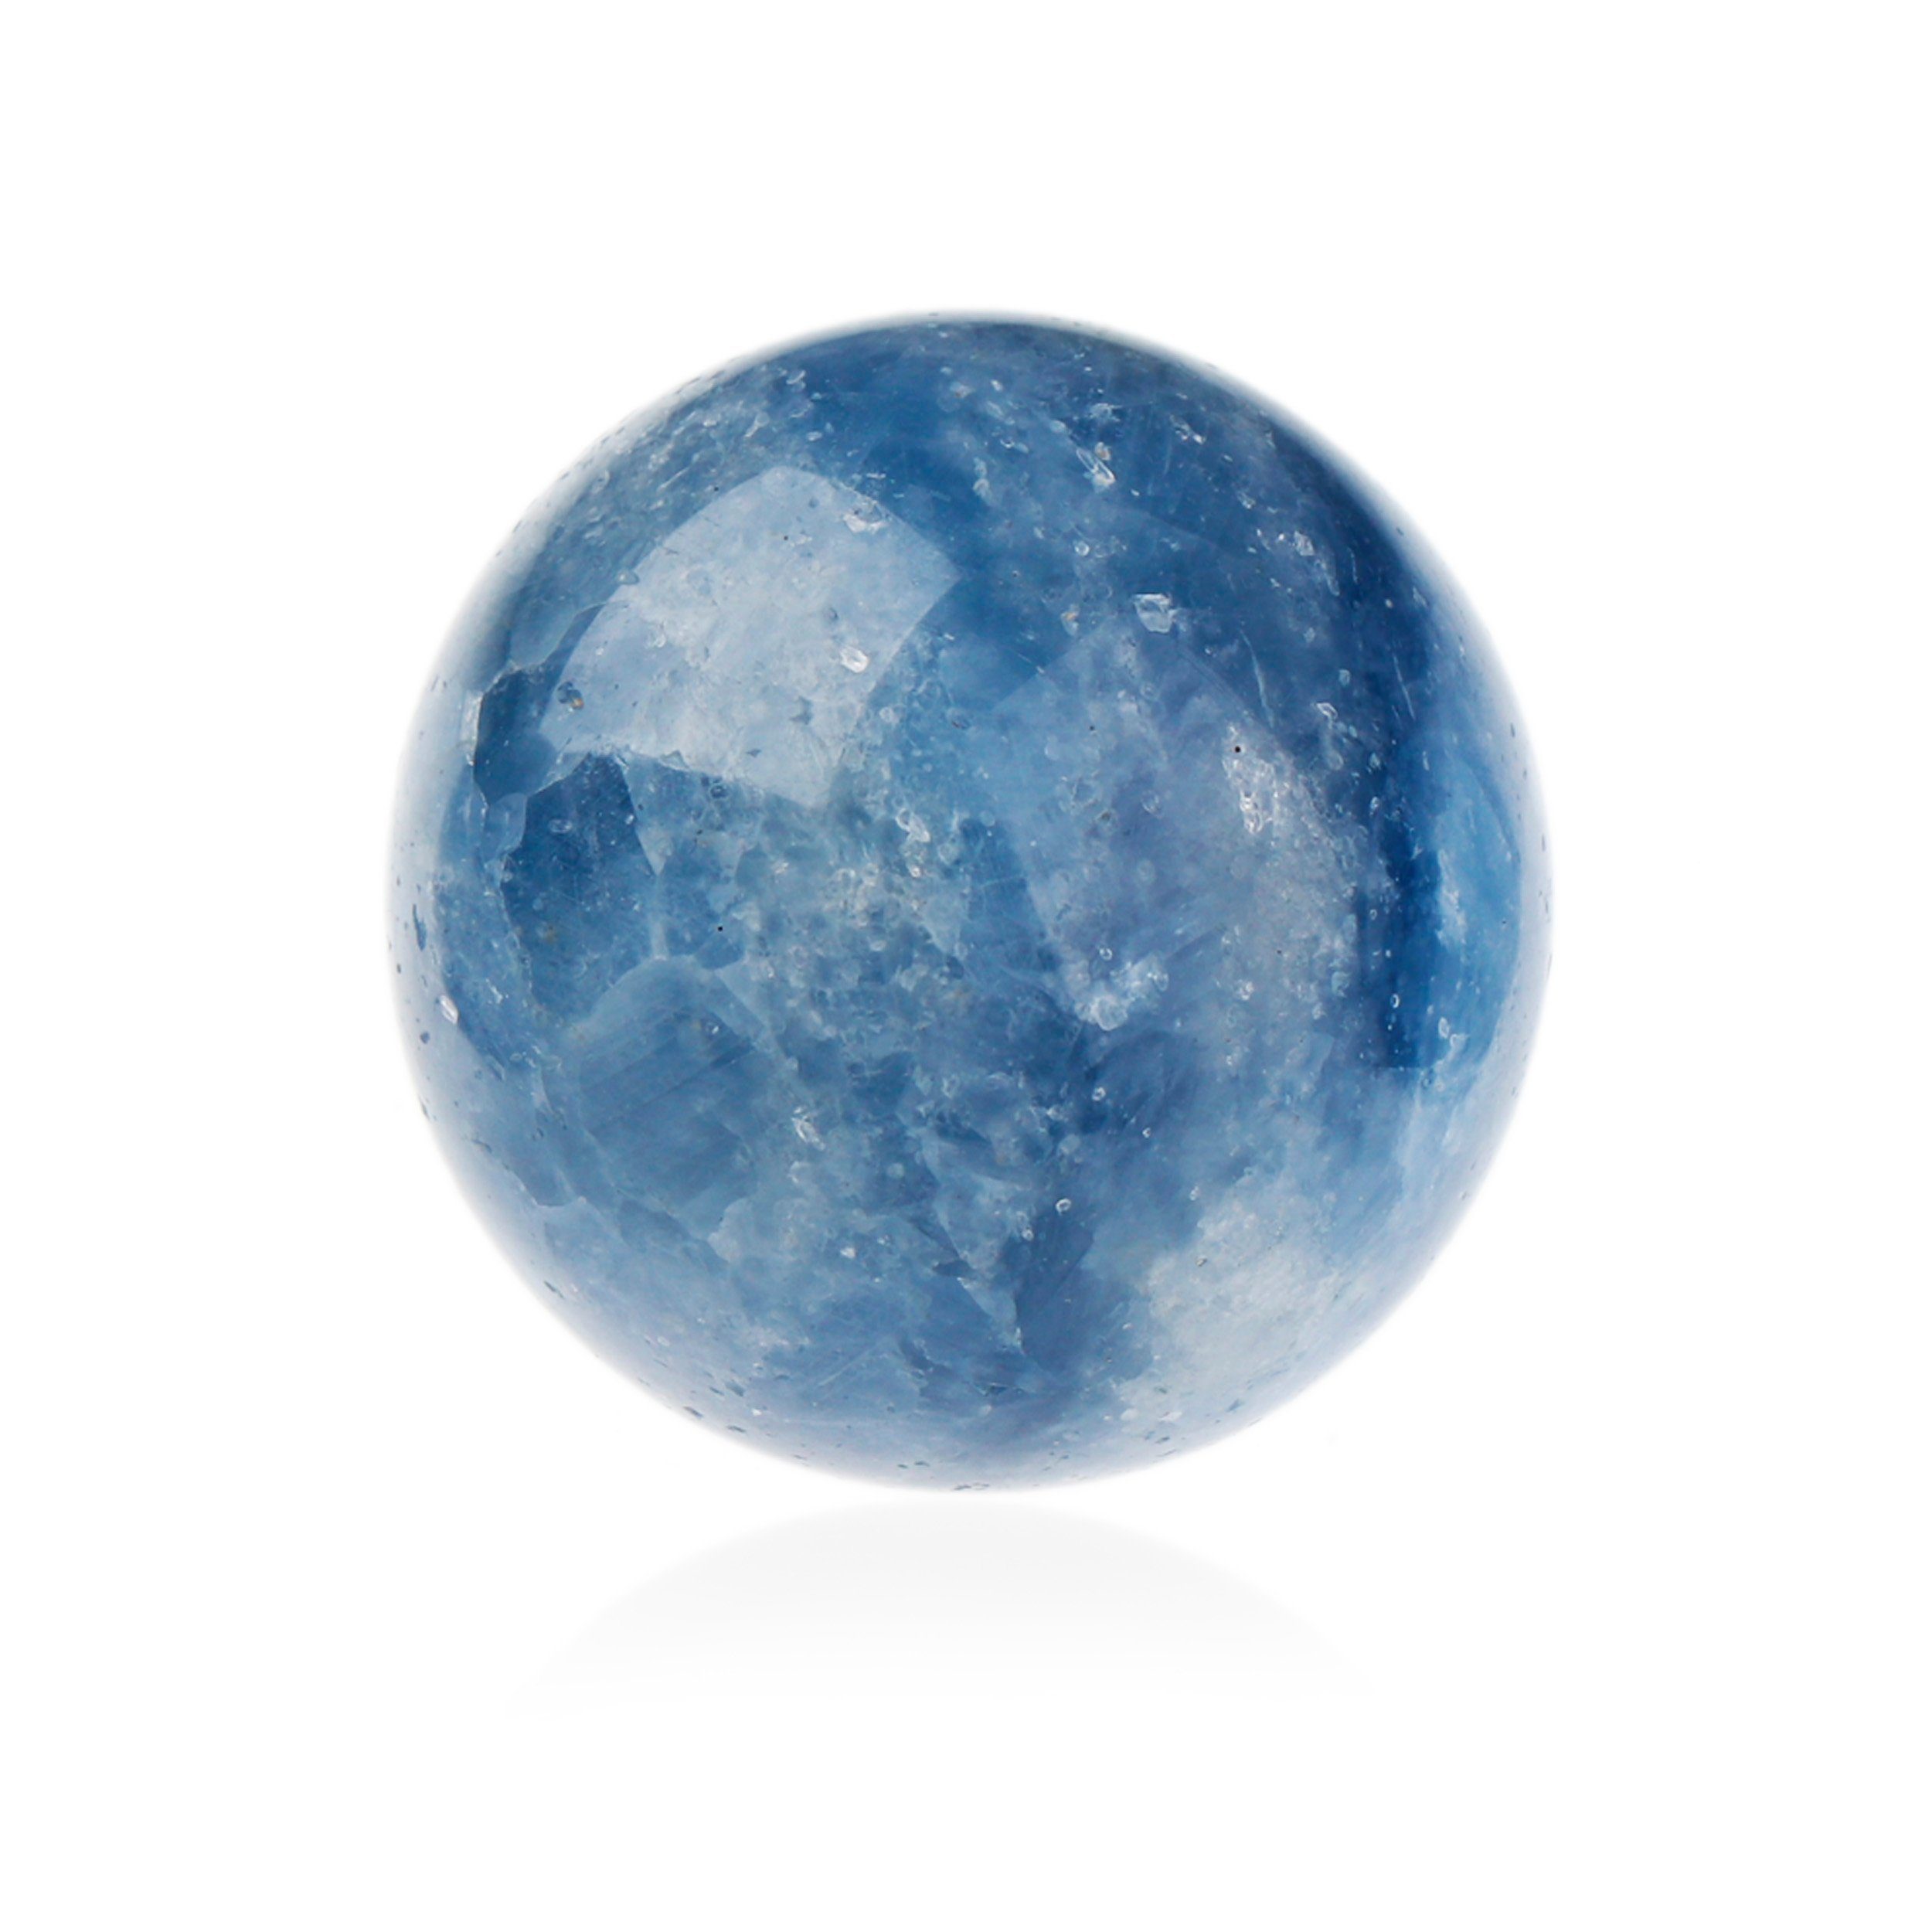 NKlaus Edelstein Natürlicher Calcit blau Kugelform 40mm Edelstein spirituelle Heilwirku, Meditation